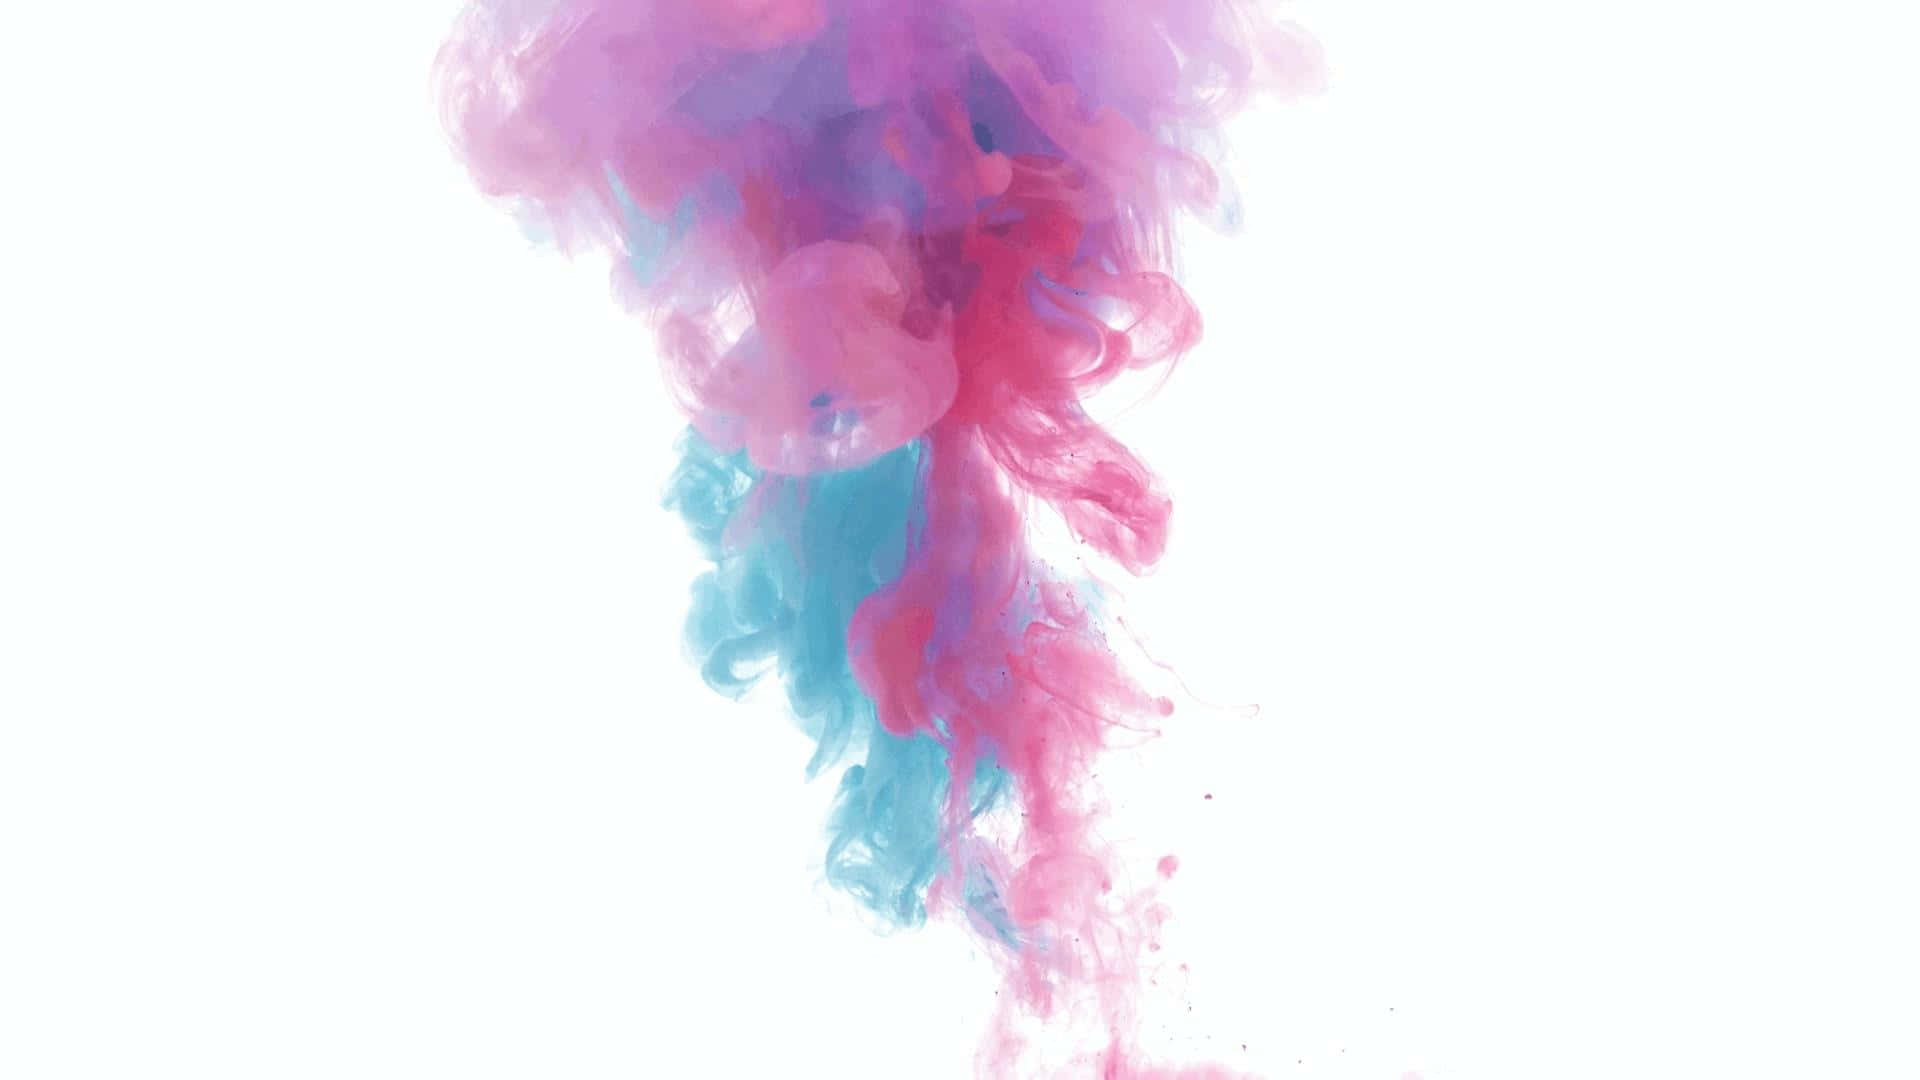 Umfundo De Fumaça Colorido, Apresentando Tons Brilhantes De Azul E Rosa.